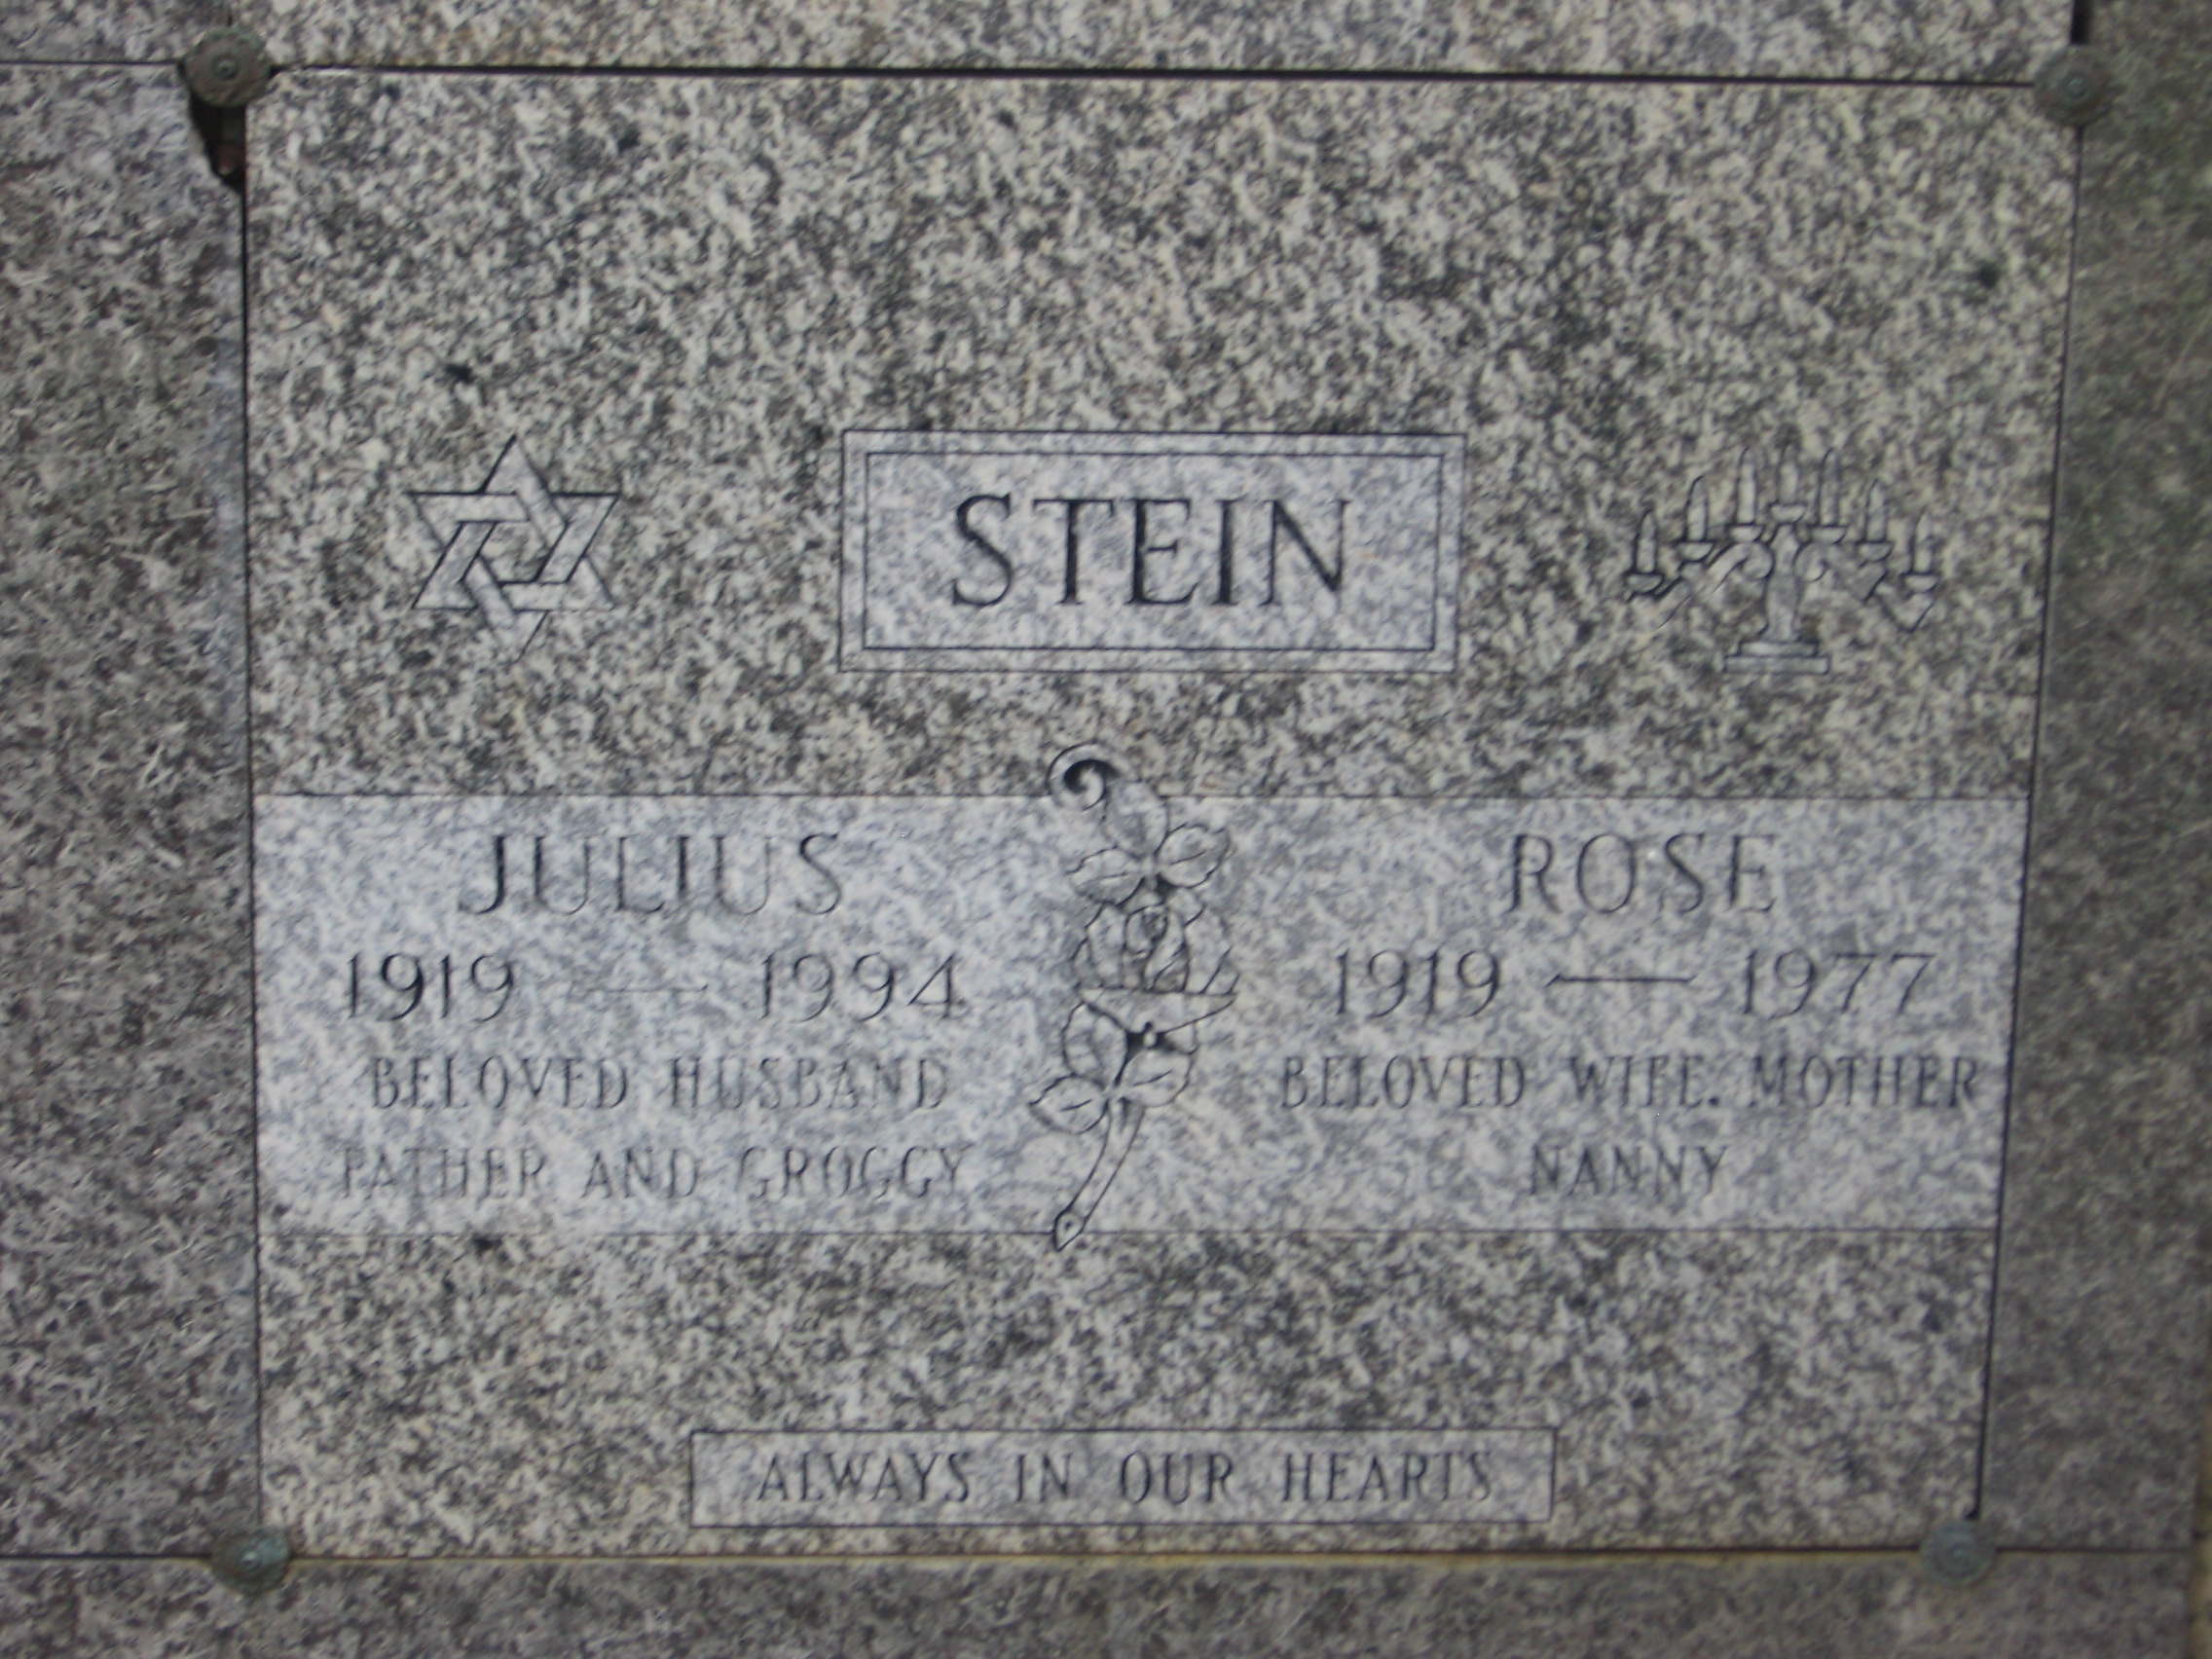 Julius Stein